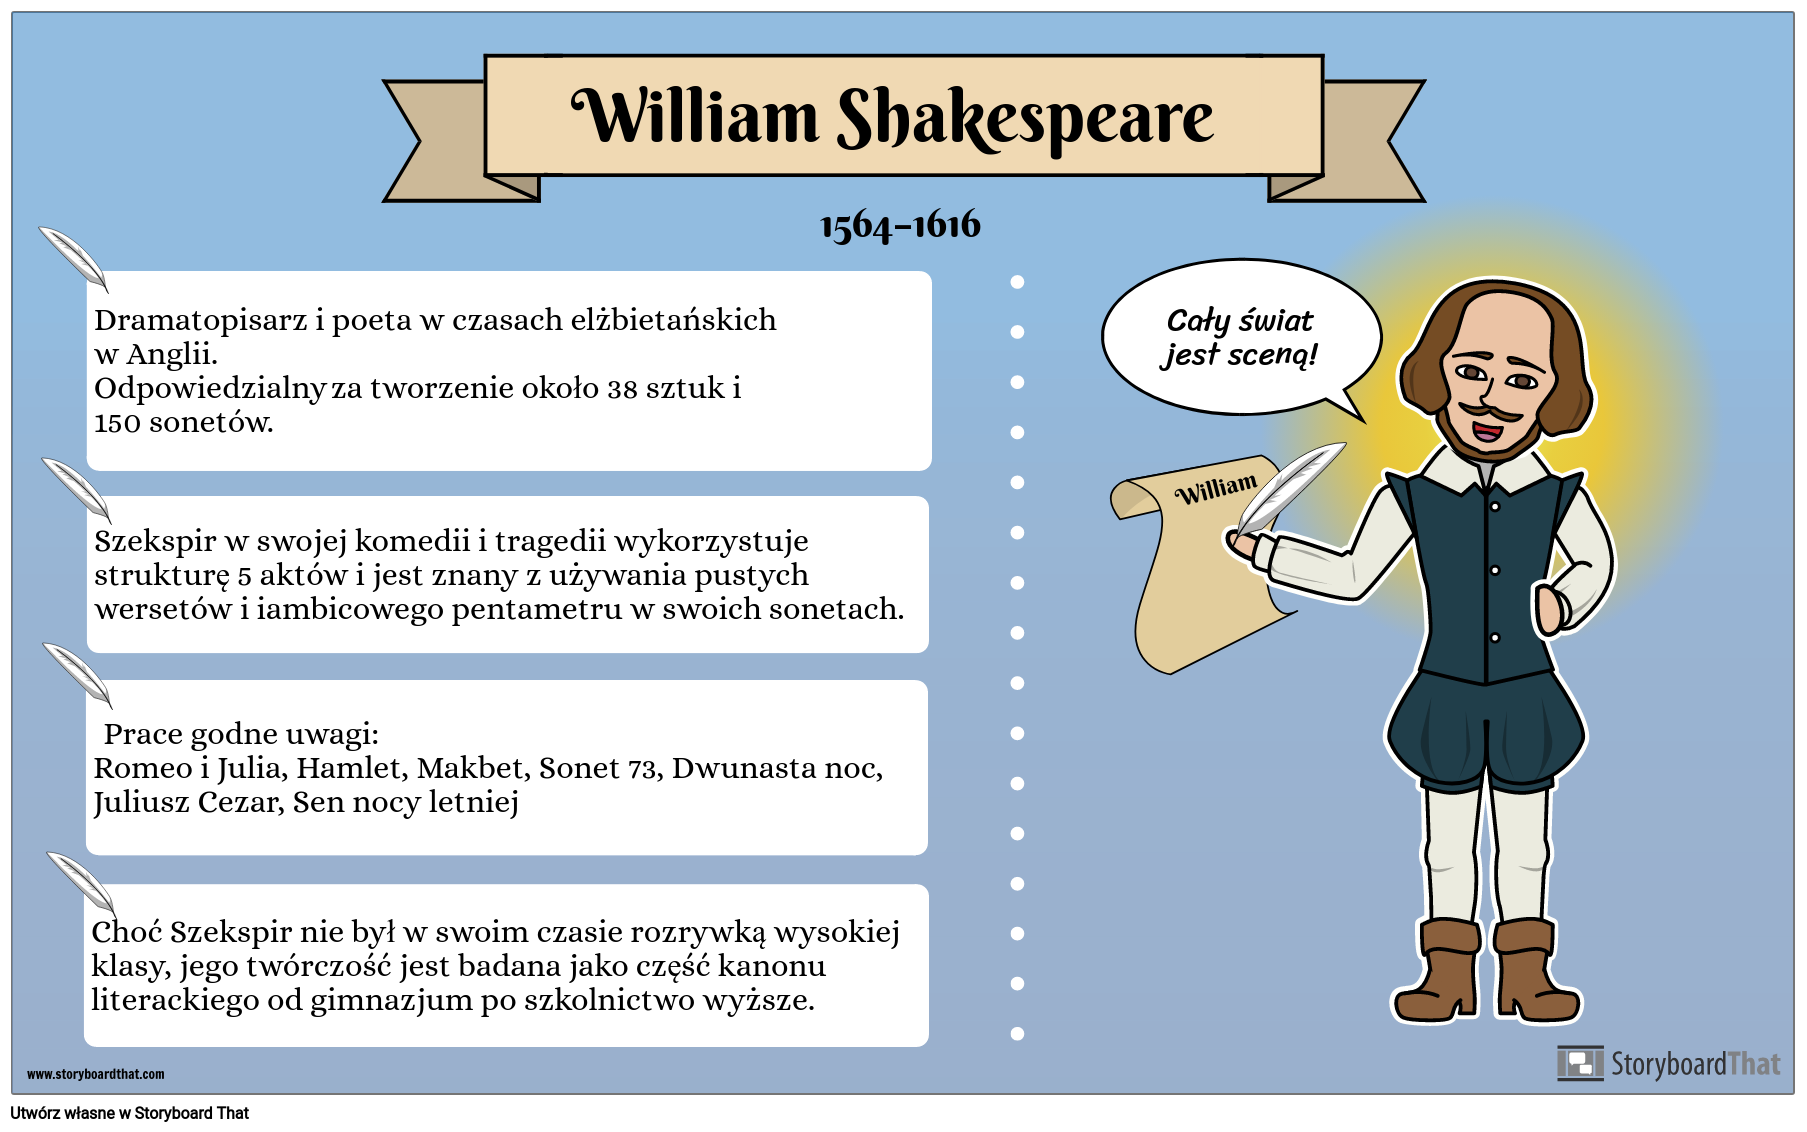 Przykład Plakatu Biograficznego — William Shakespeare 